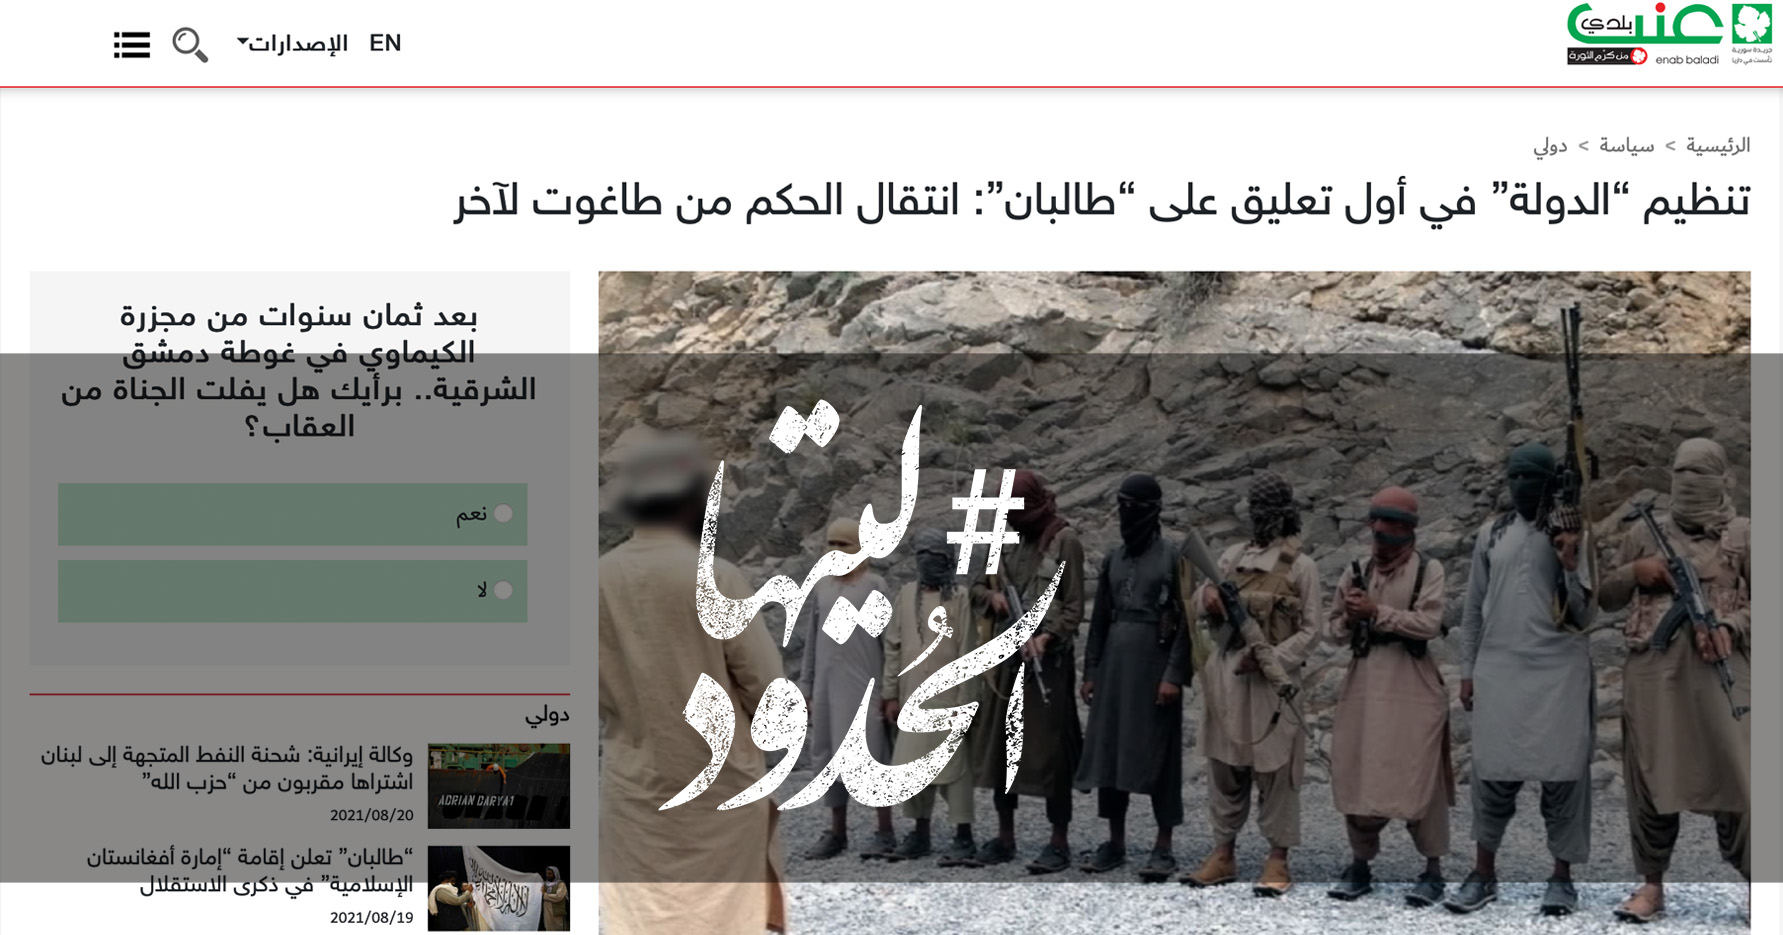 صورة تنظيم “الدولة” في أول تعليق على “طالبان”: انتقال الحكم من طاغوت لآخر